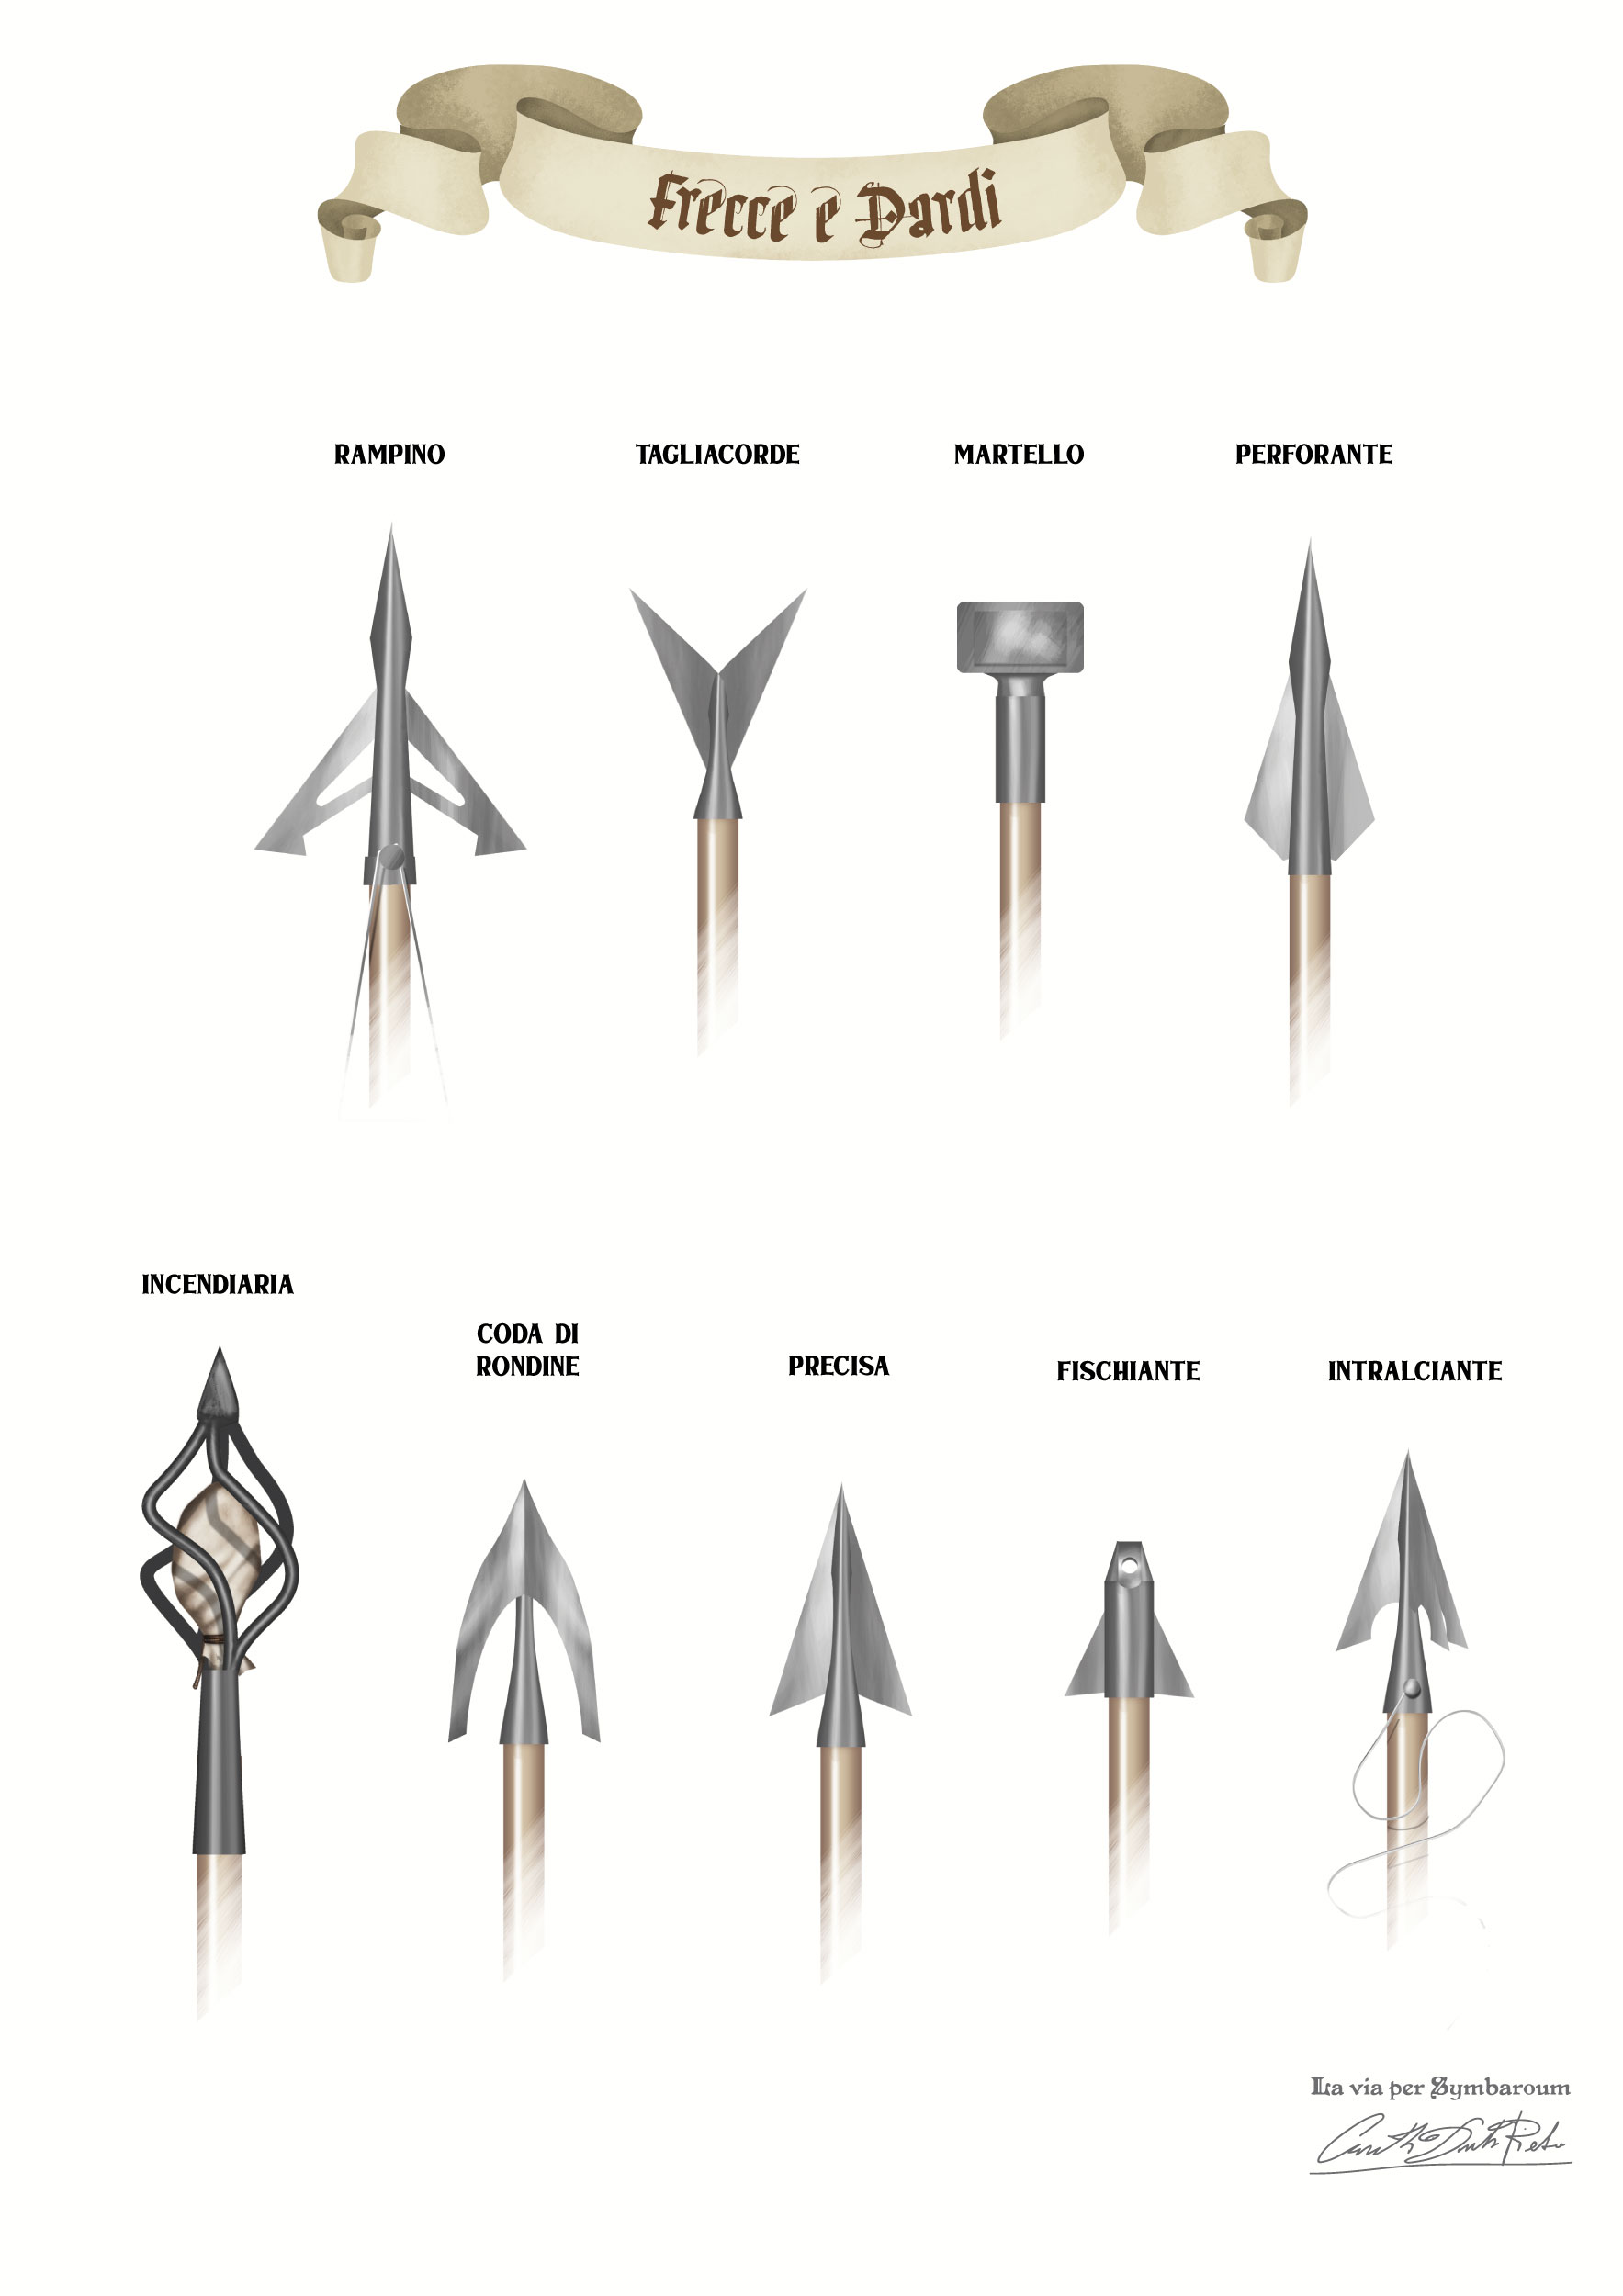 Immagini di punte di frecce e dardi del gioco di ruolo Symbaroum